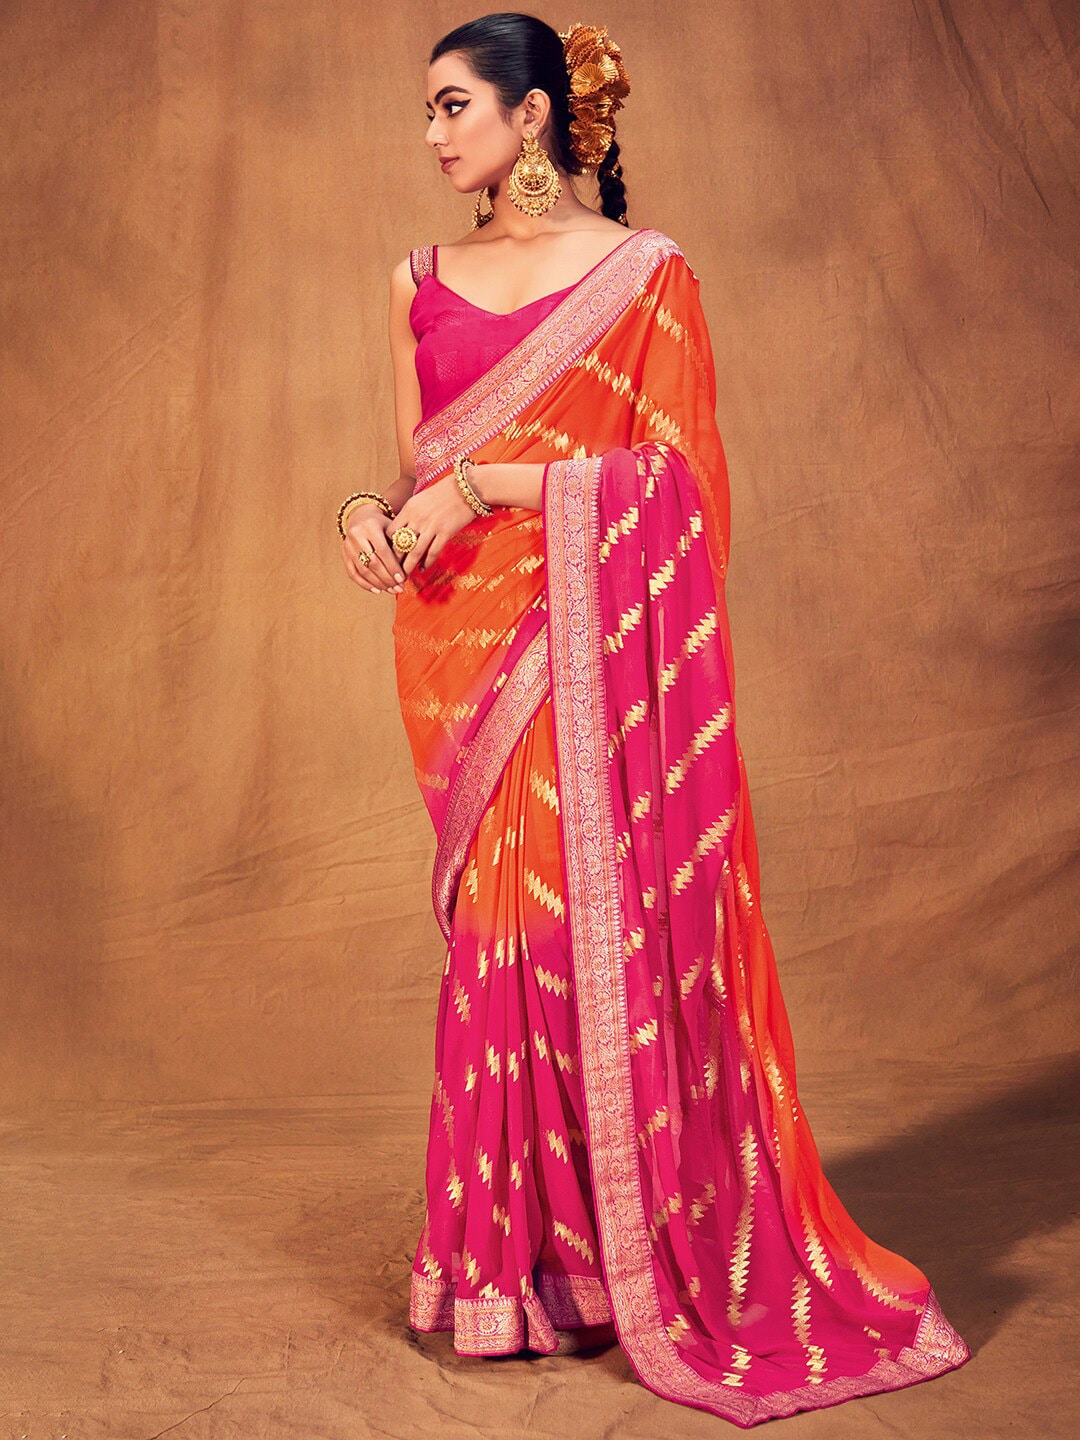 Saree mall Striped Woven Design Zari Pure Georgette Sarees Price in India